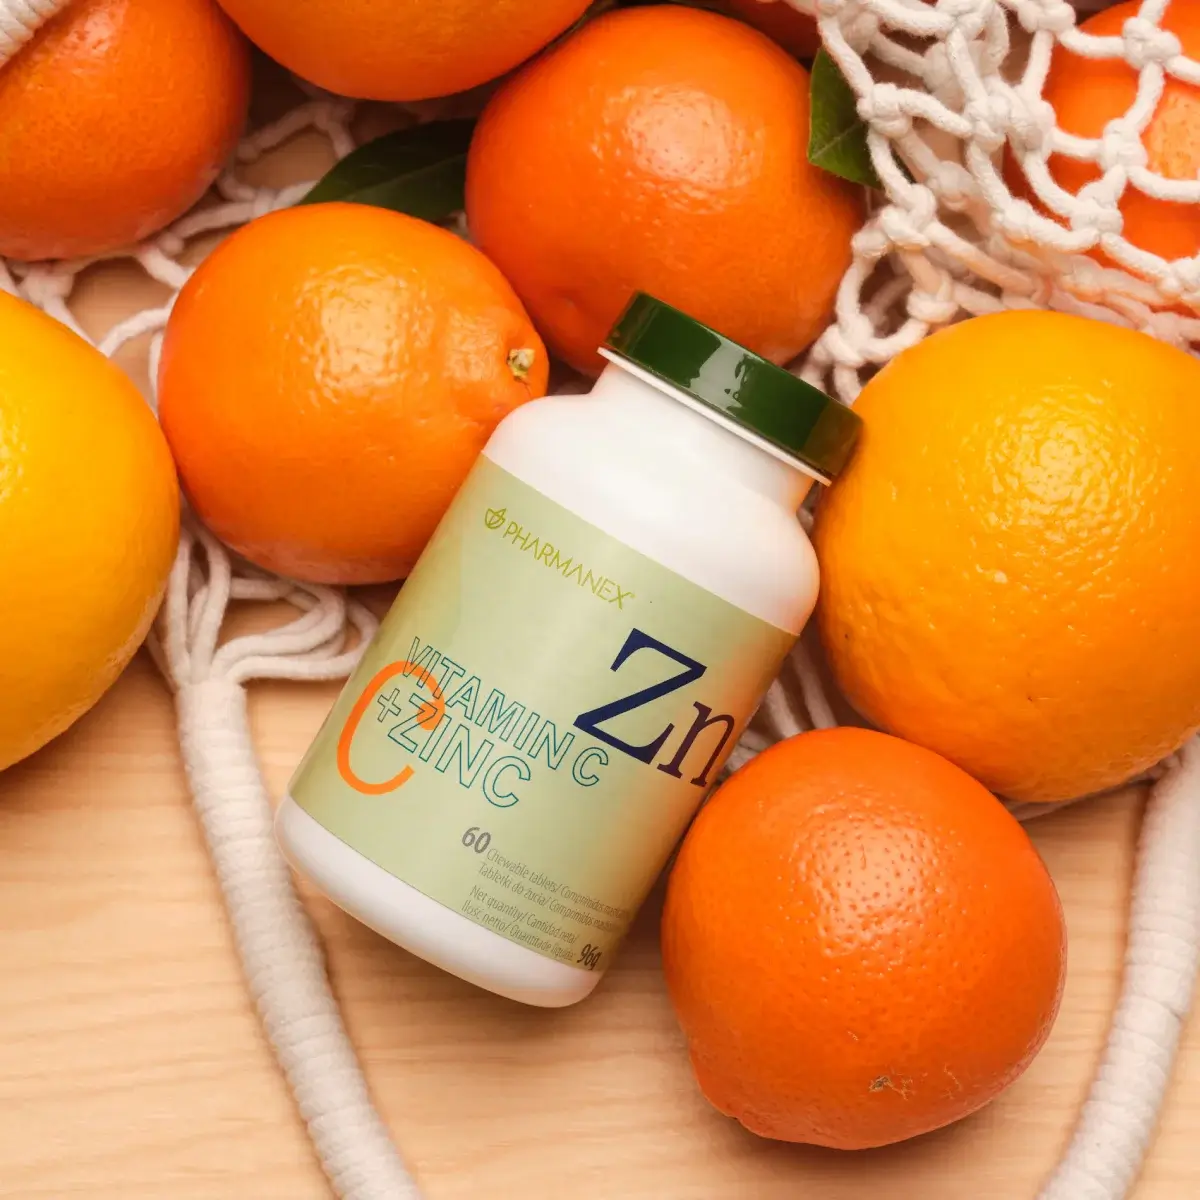 Nu Skin Pharmanex Vitamin C +Zinc